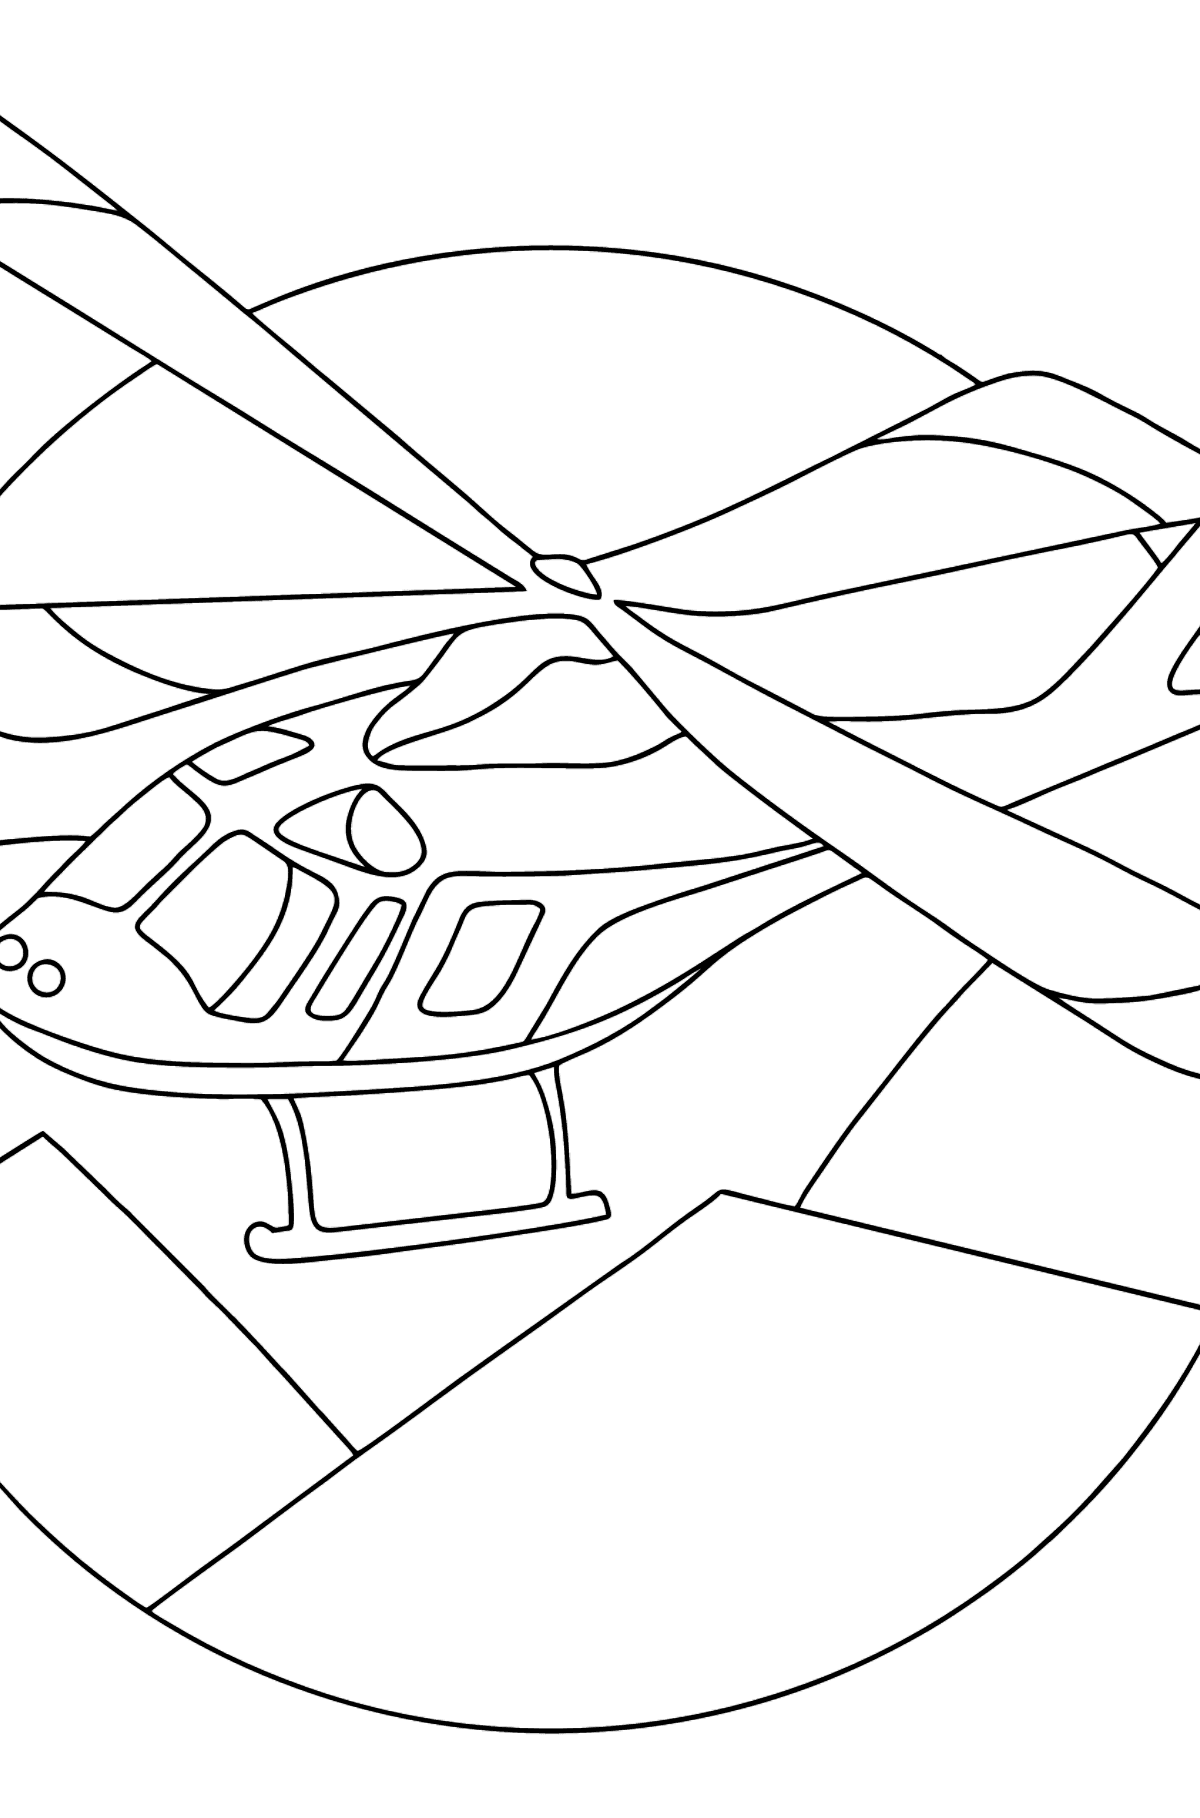 Kleurplaat sporthelikopter - kleurplaten voor kinderen